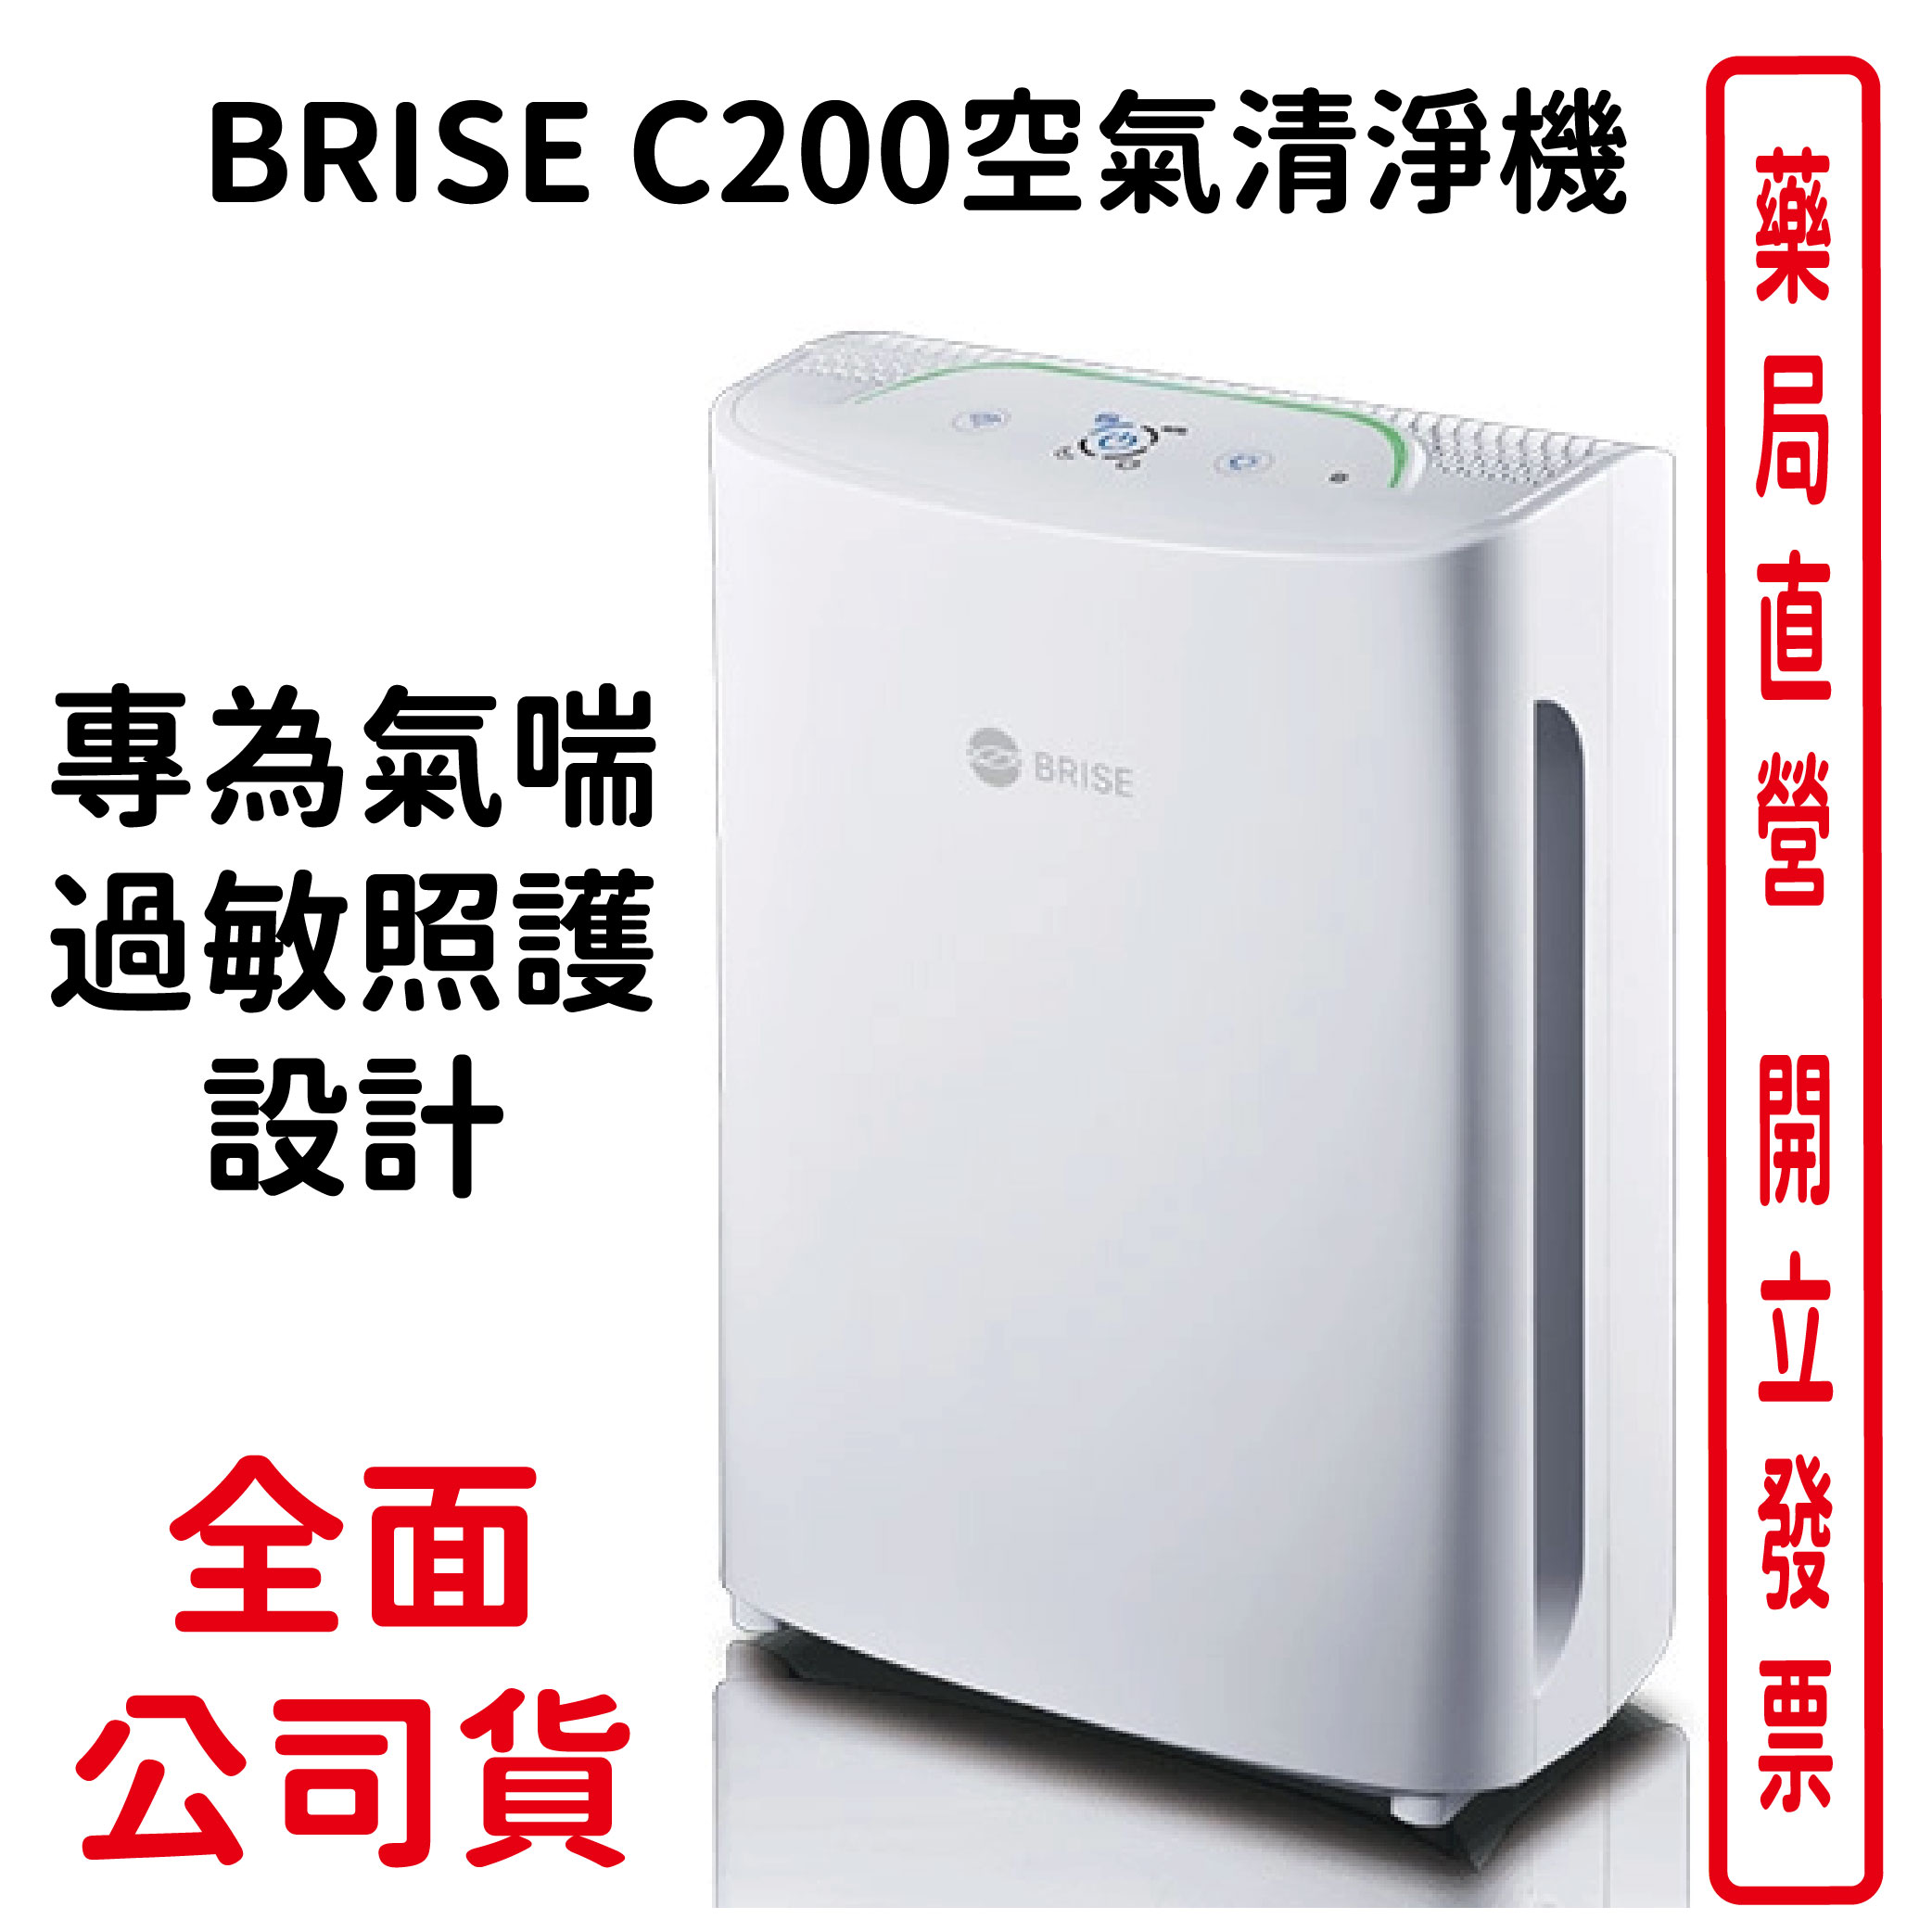 【BRISE】C200空氣清淨機-全球第一台人工智慧空氣清淨機